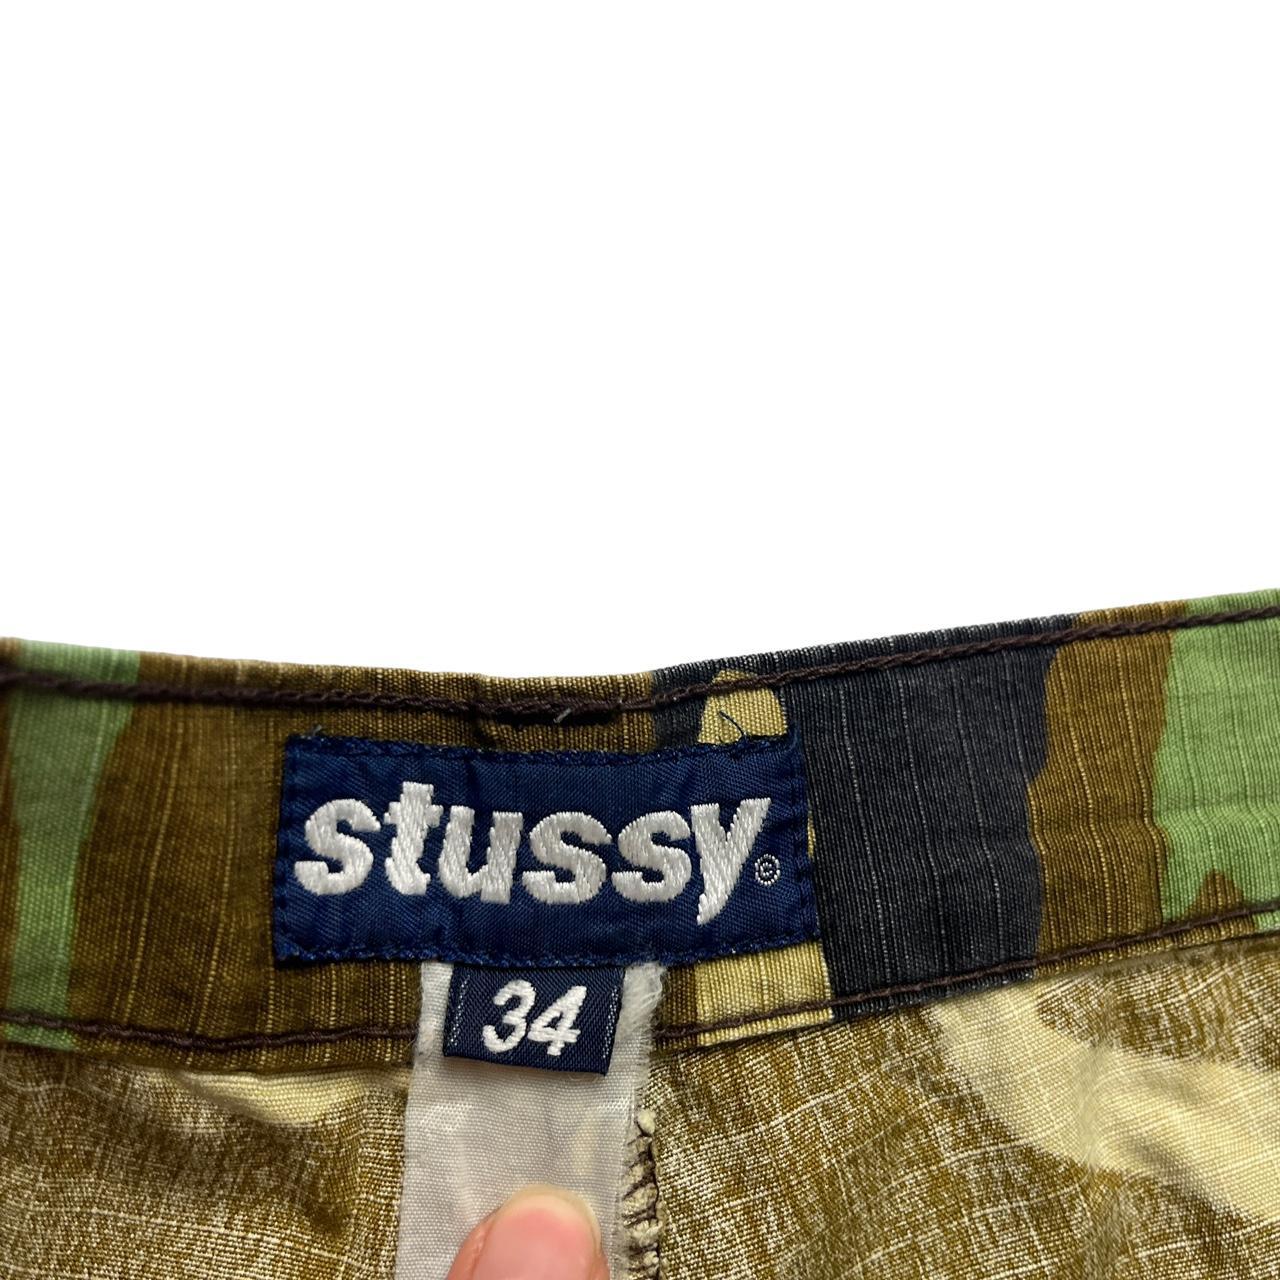 Stussy camo Shorts (34)